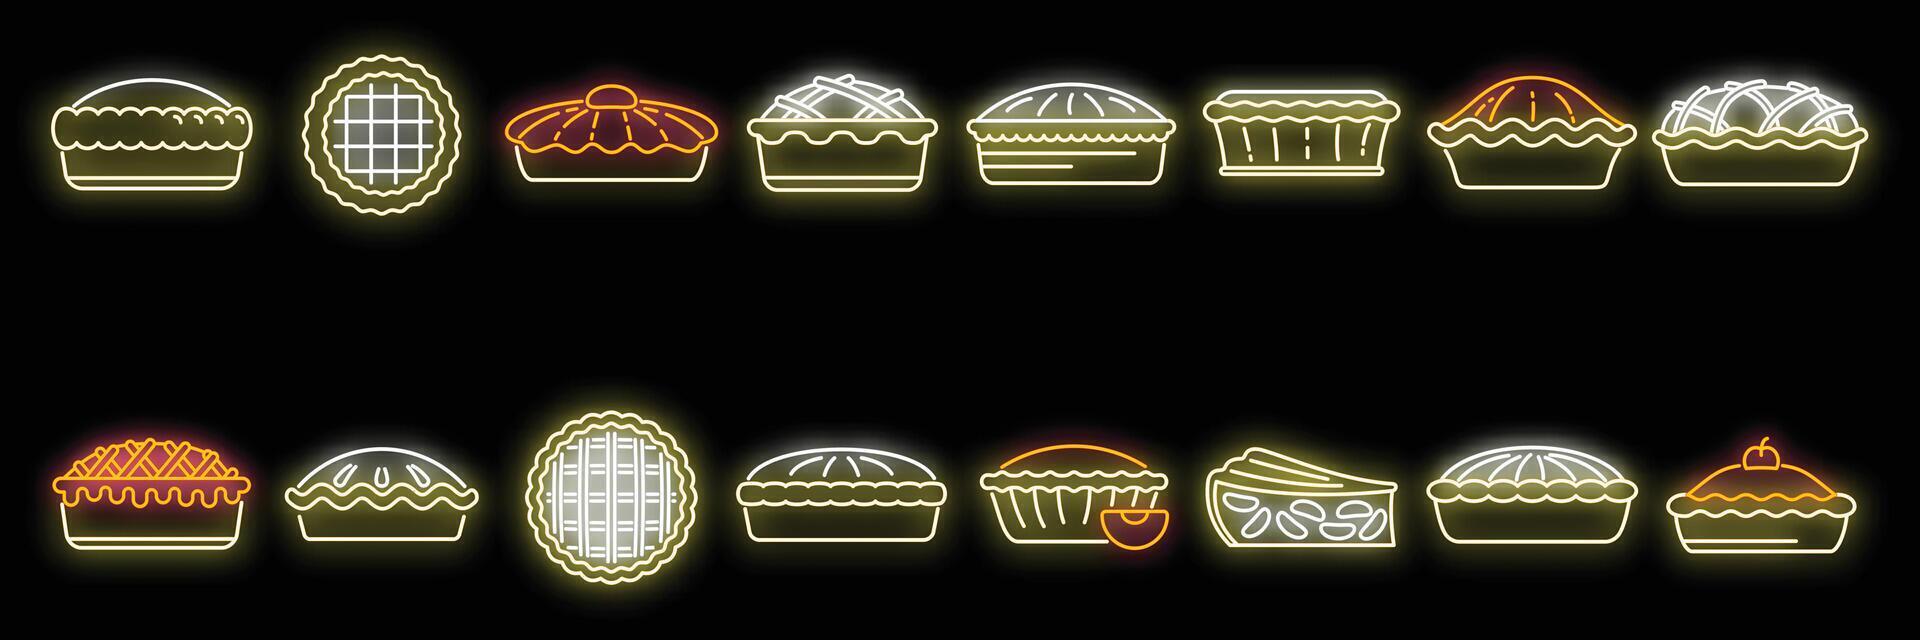 Apple pie icons set vector neon